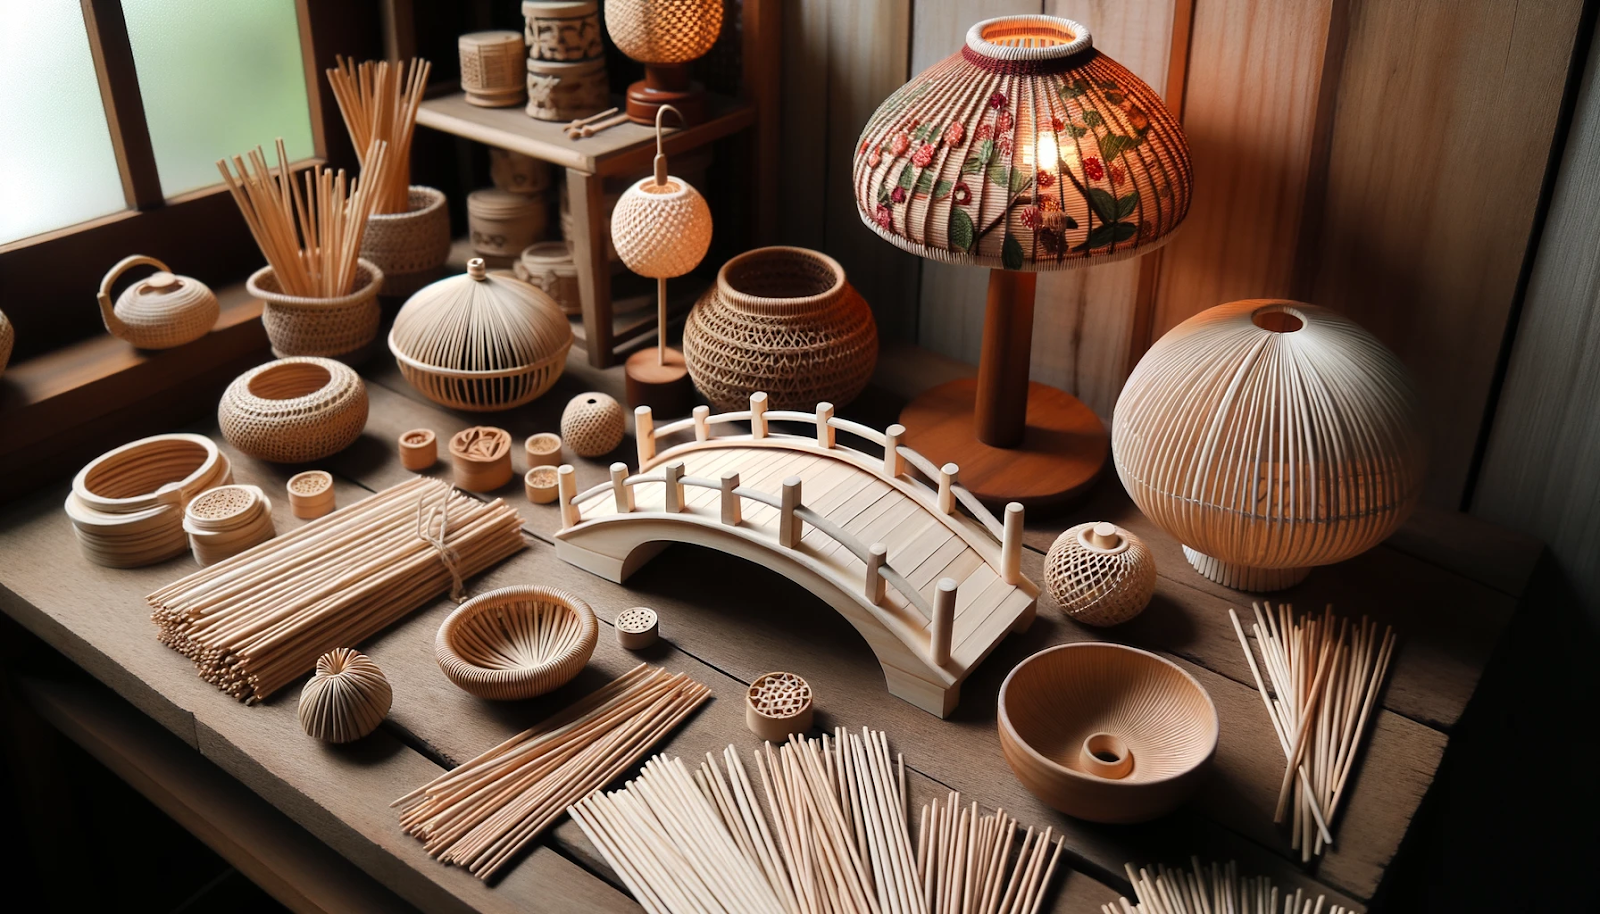 O artesanato com palito de churrasco é uma forma criativa e econômica de fazer arte